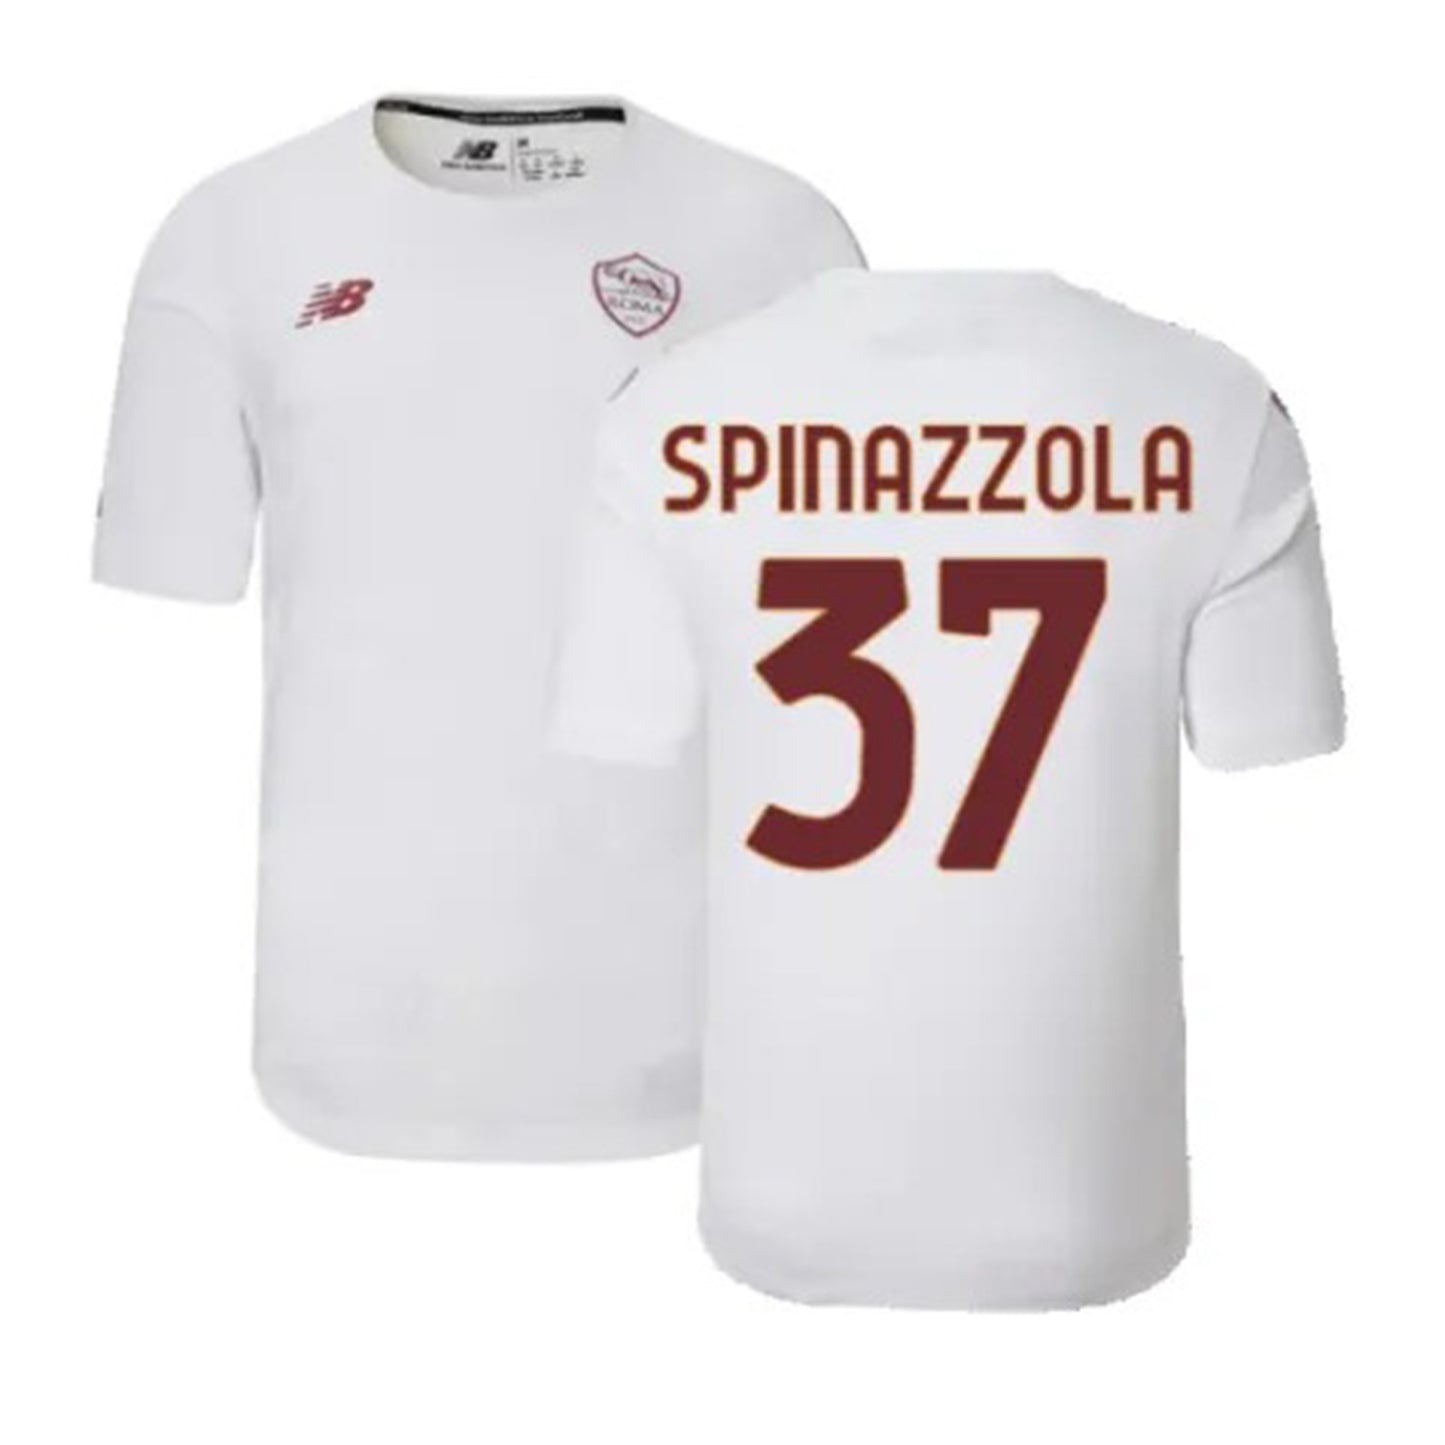 Leonardo Spinazzola Roma 37 Jersey